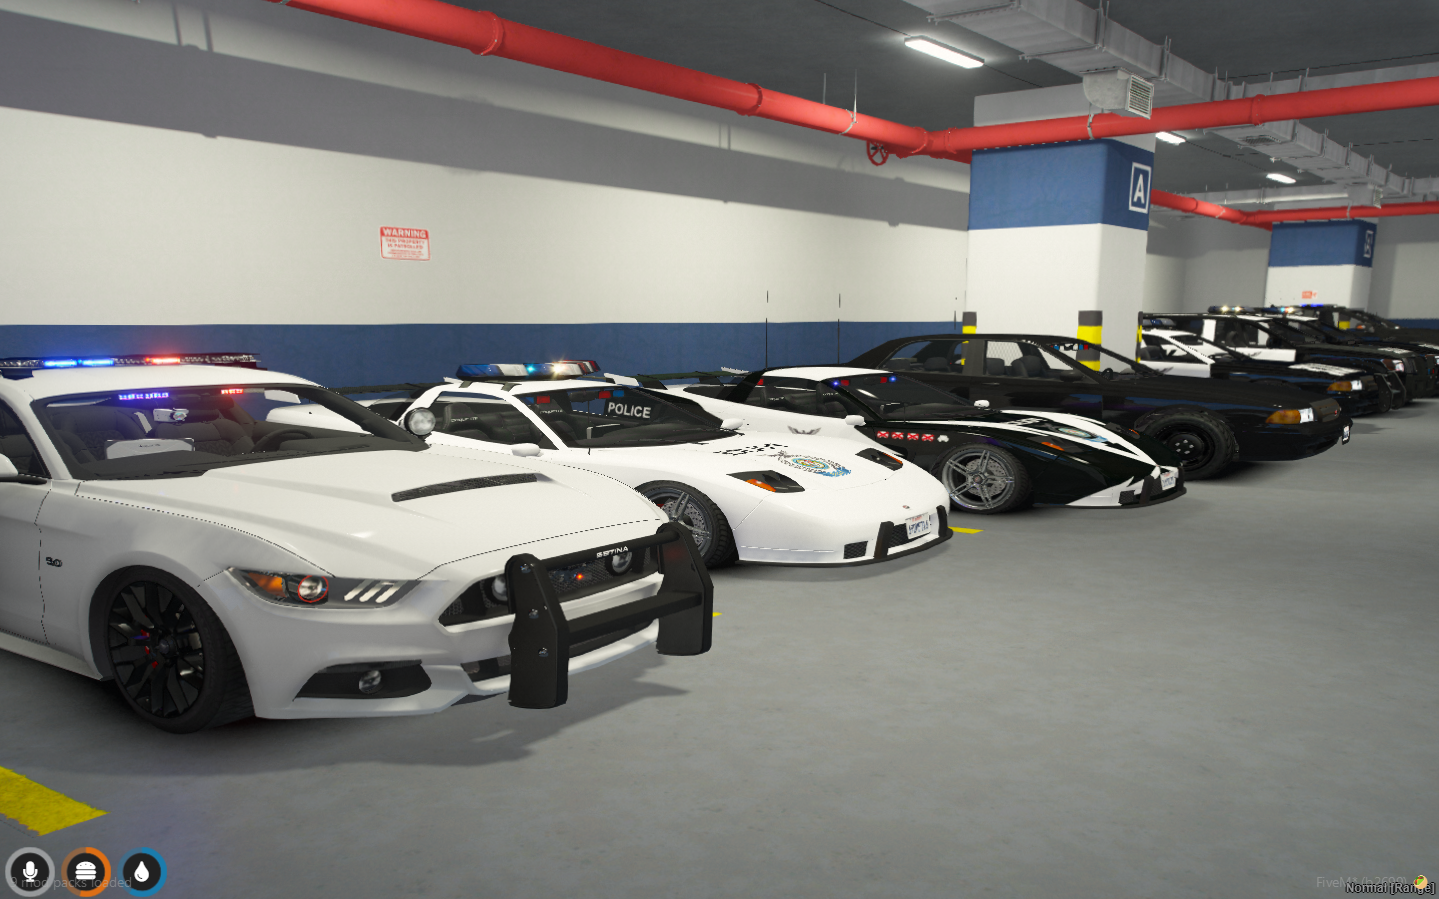 FiveM Sport Super Police Car Pack For GTA V FiveM